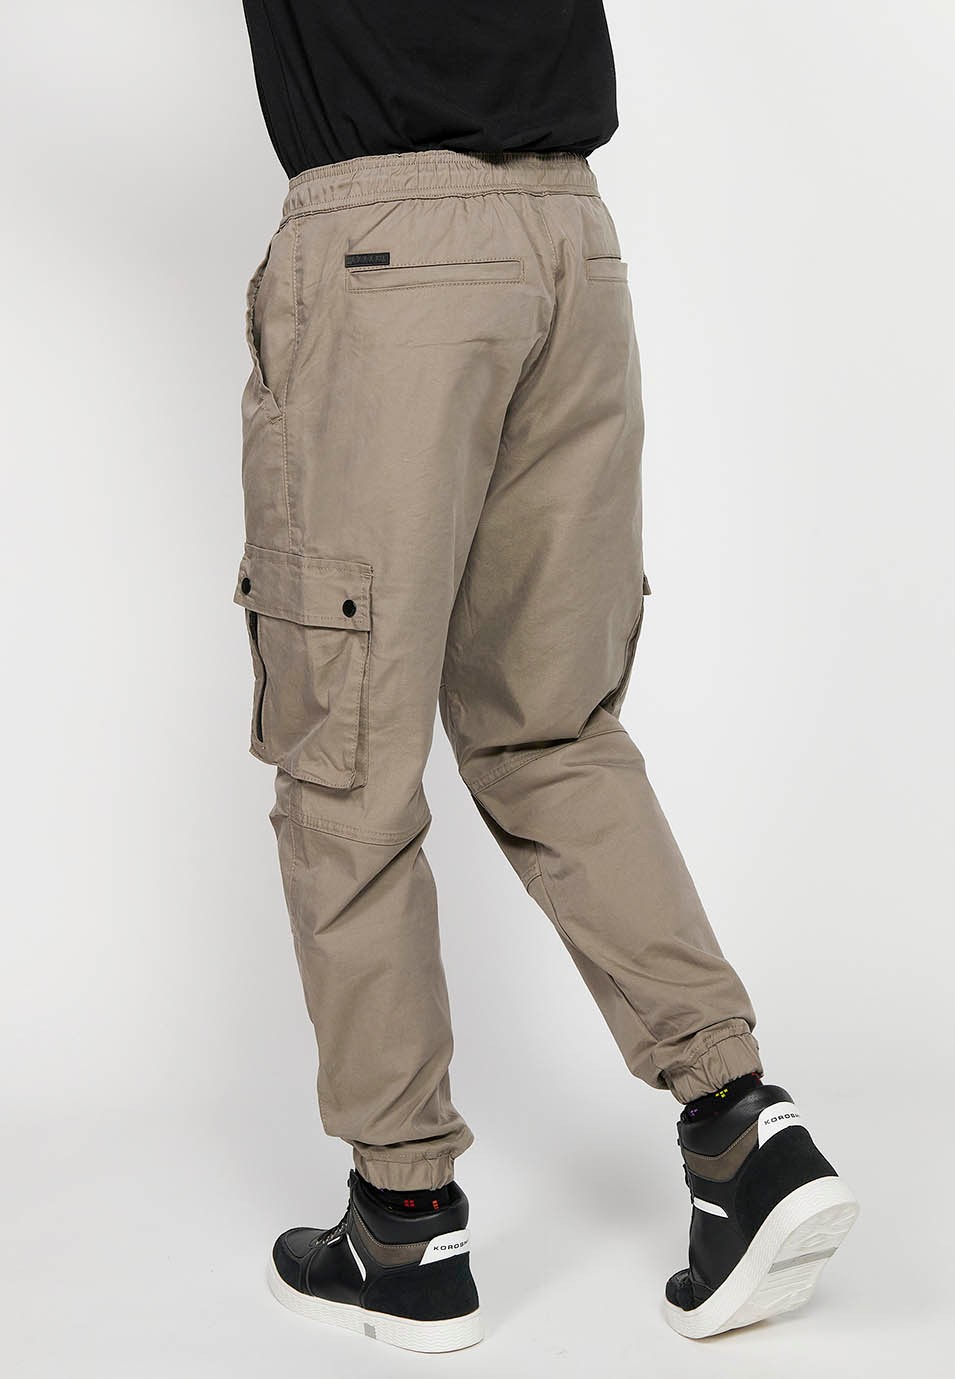 Beigefarbene Cargo-Jogginghose mit gummiertem Bund, Kordelzug und Taschen, zwei Seiten mit Klappe für Herren